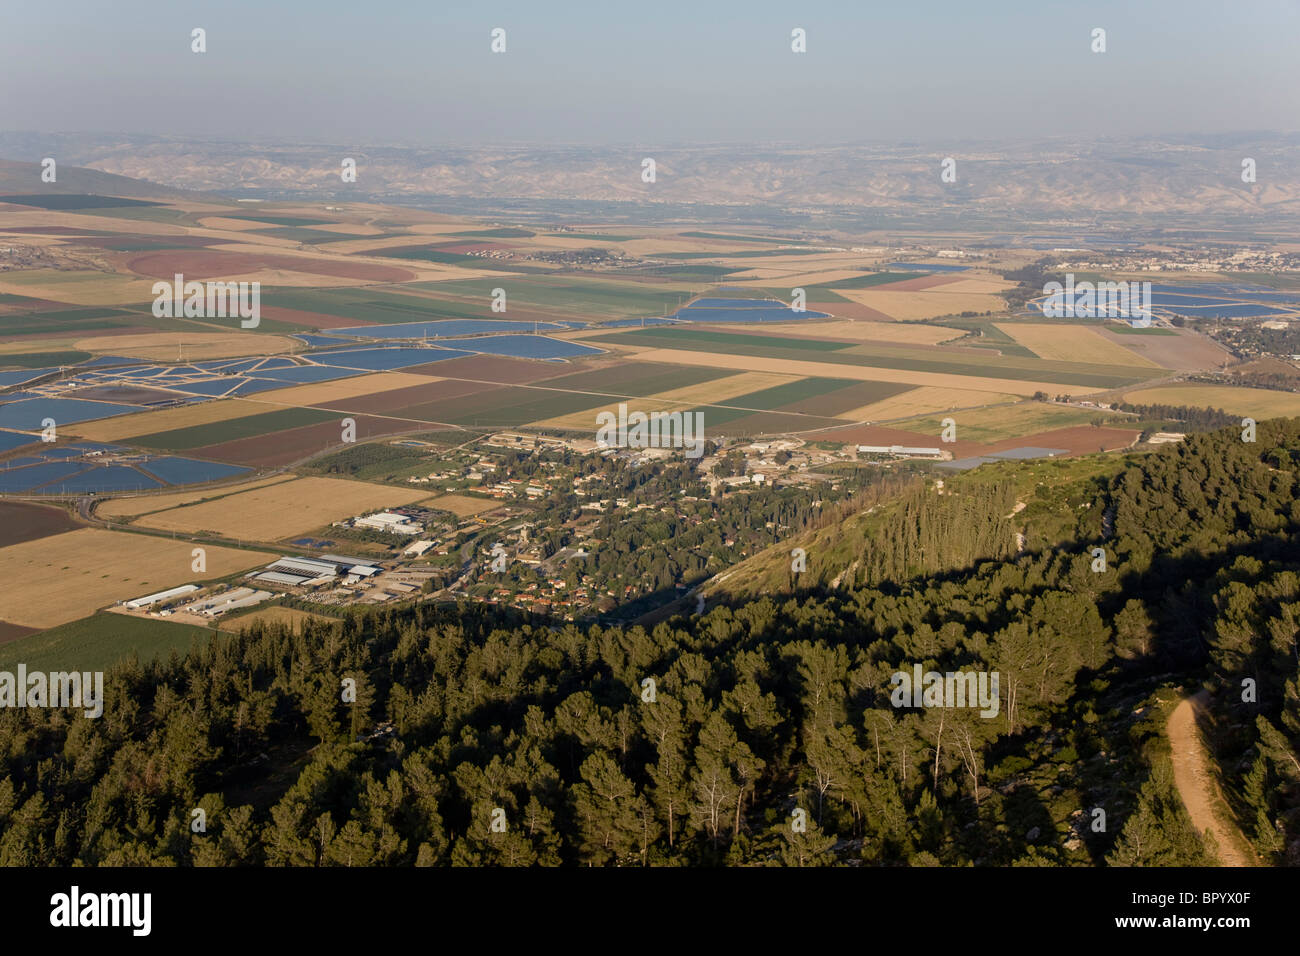 Photographie aérienne du champs de l'agriculture de la vallée de Jezreel Banque D'Images